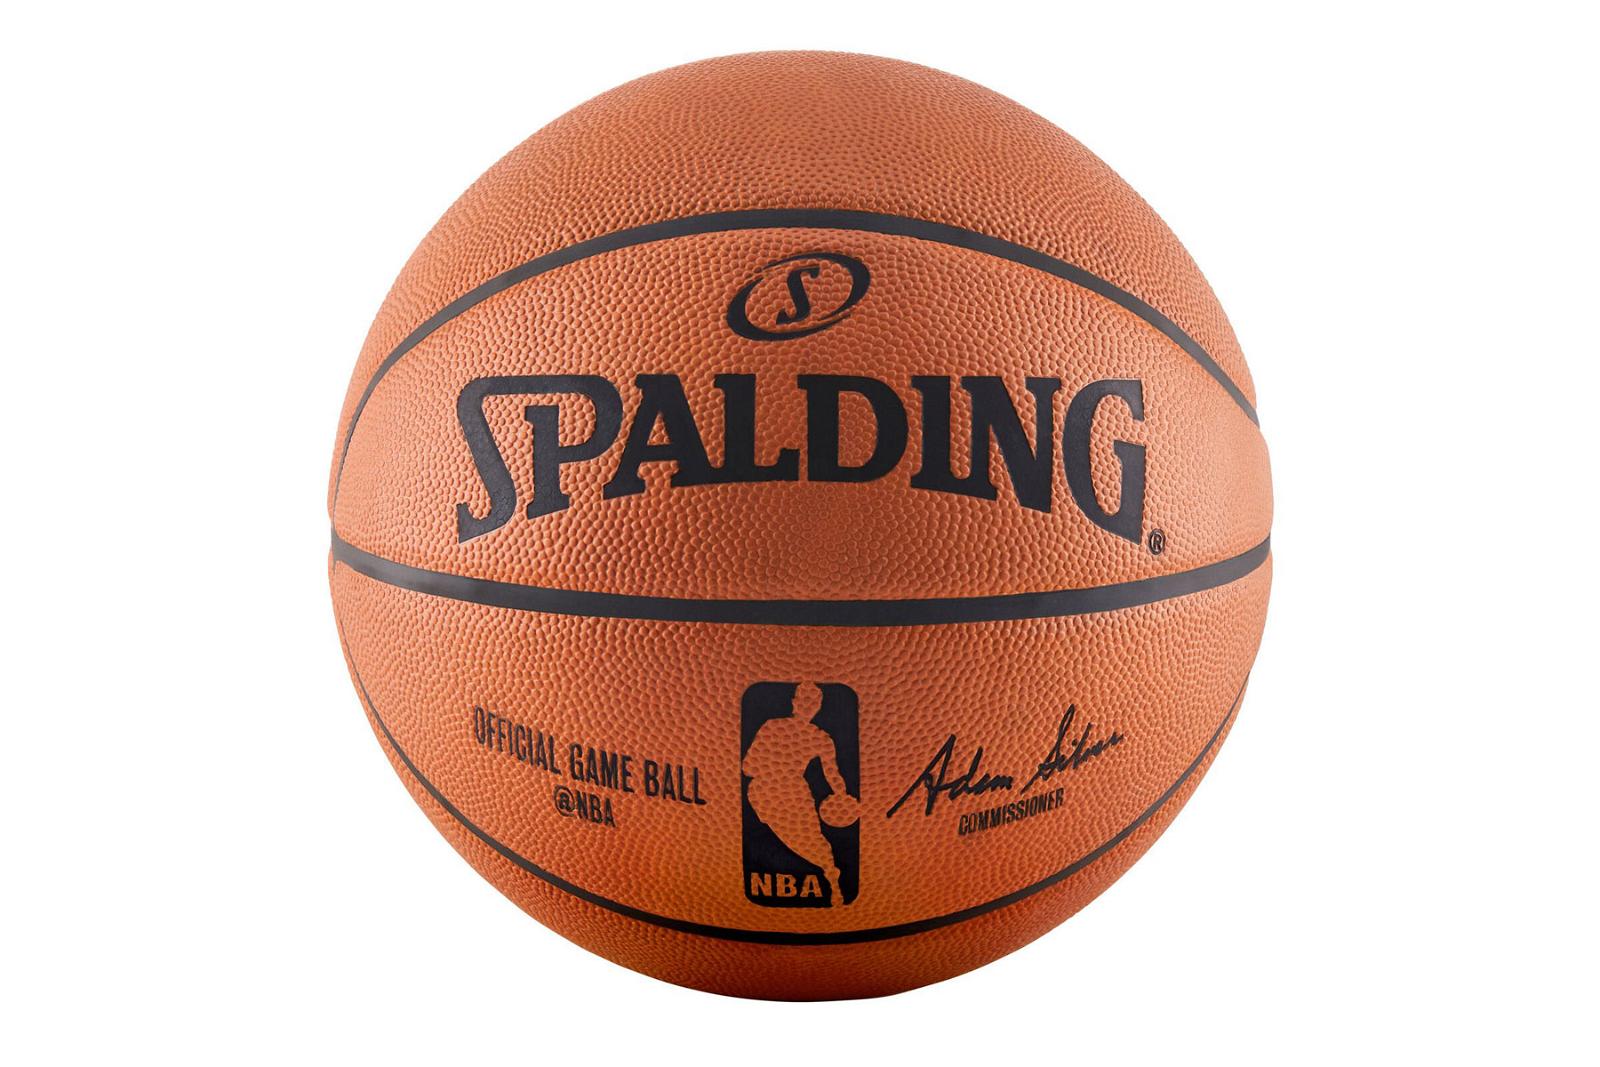 Spalding Official NBA Game Ball